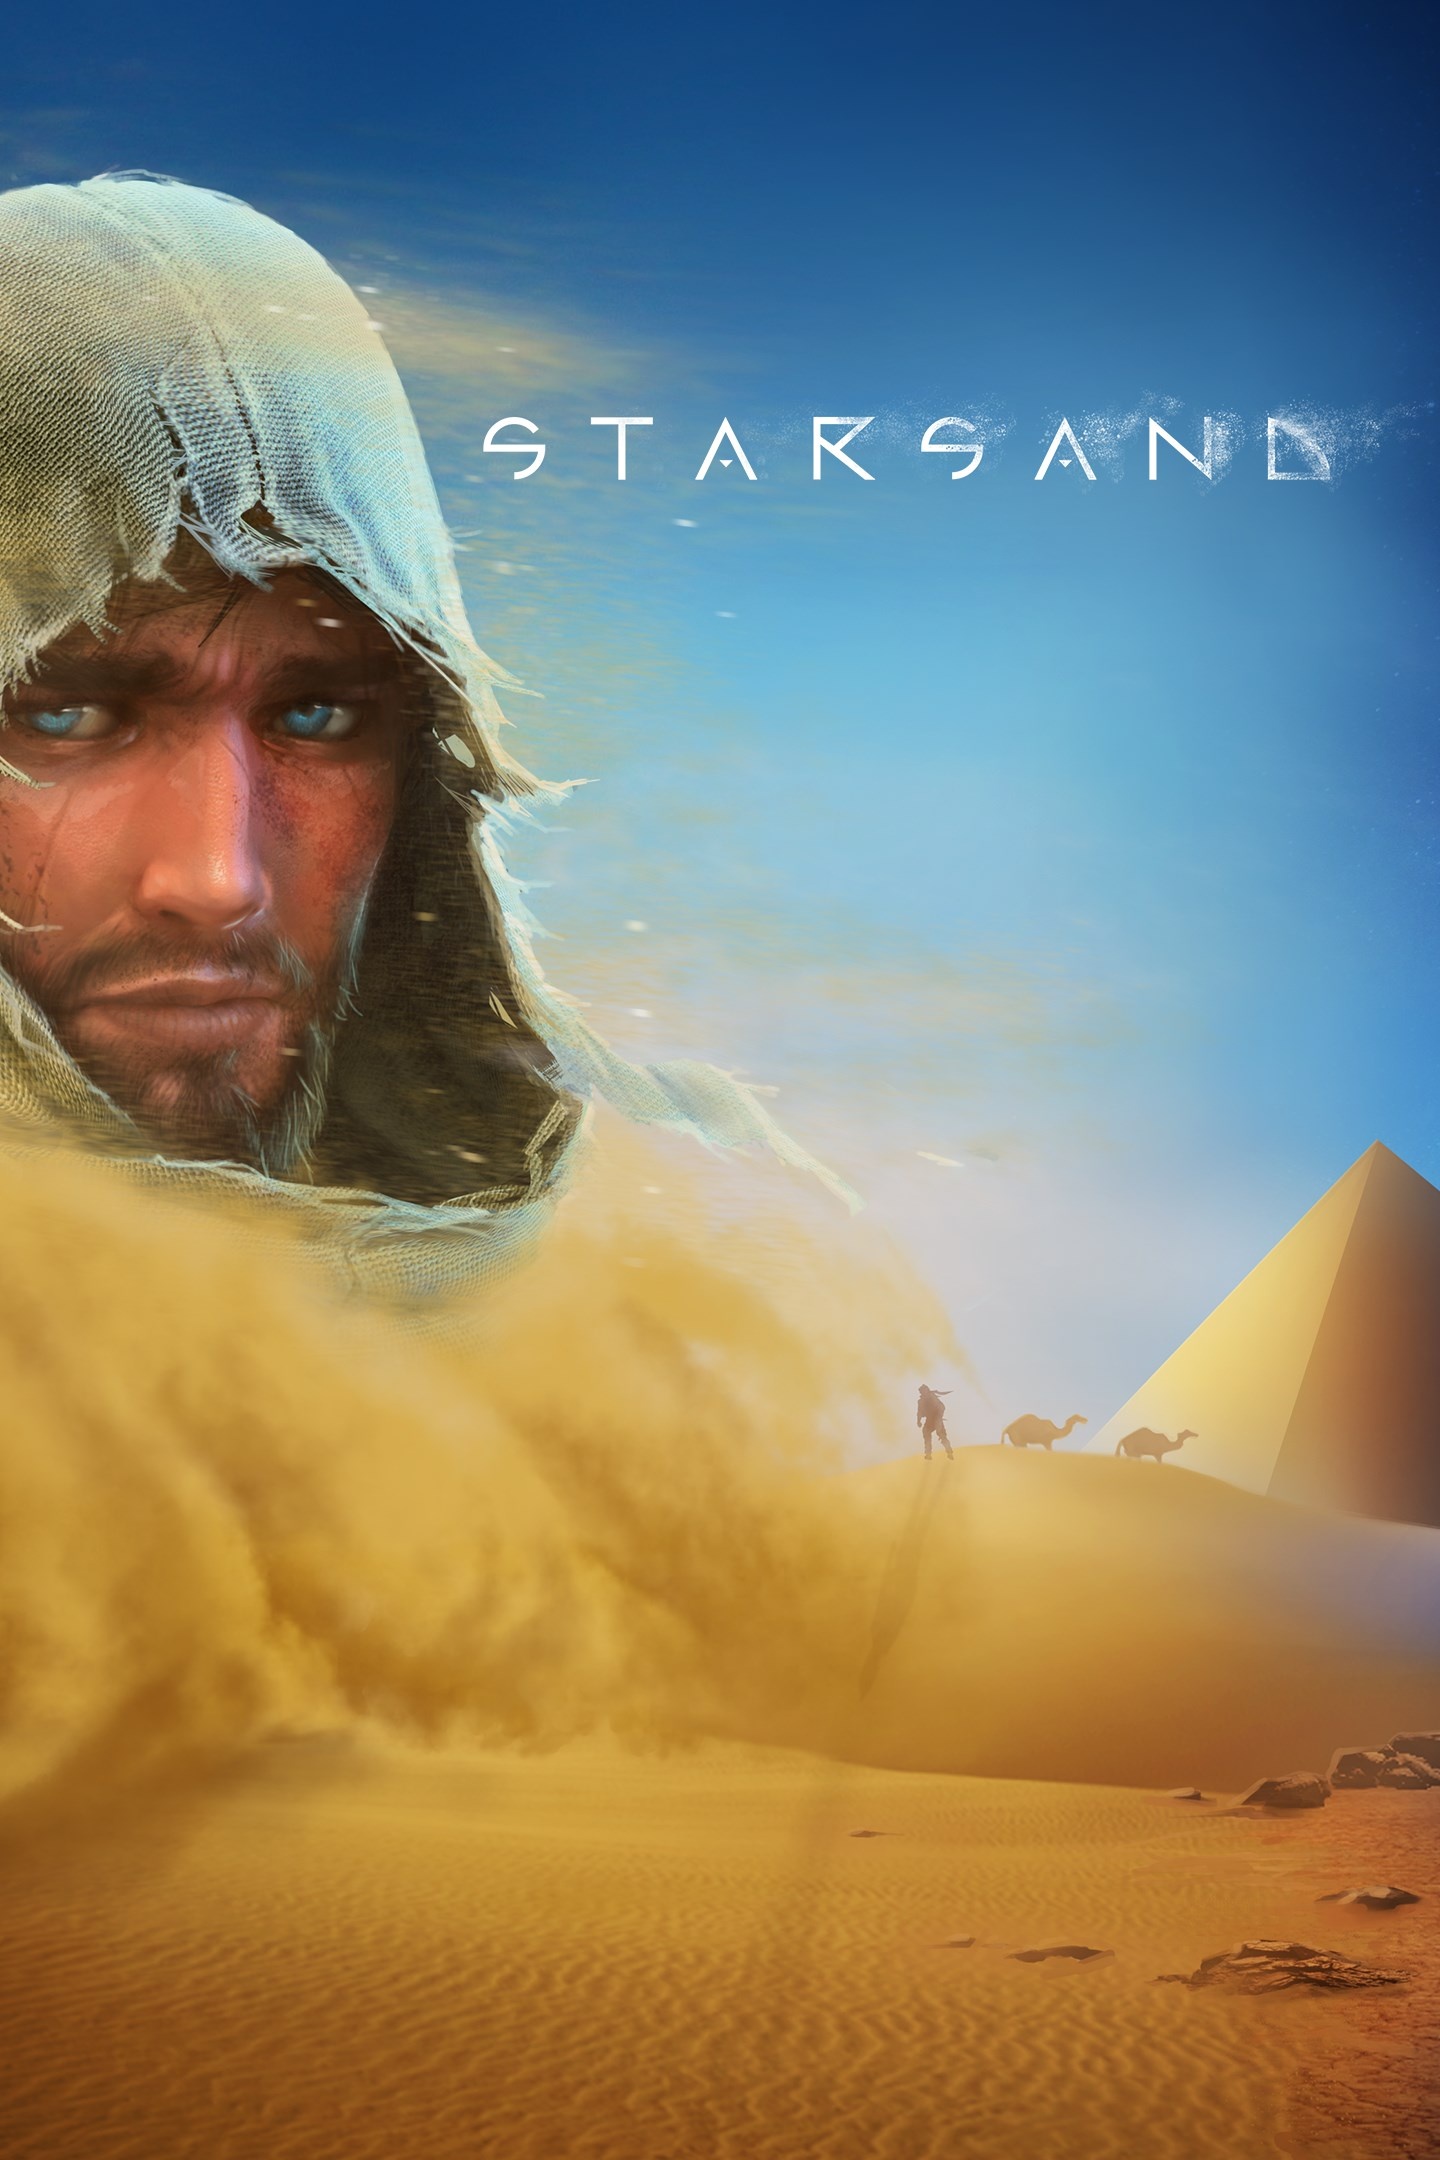 Next Week on Xbox: Neue Spiele vom 14. bis zum 18. November: Starsand